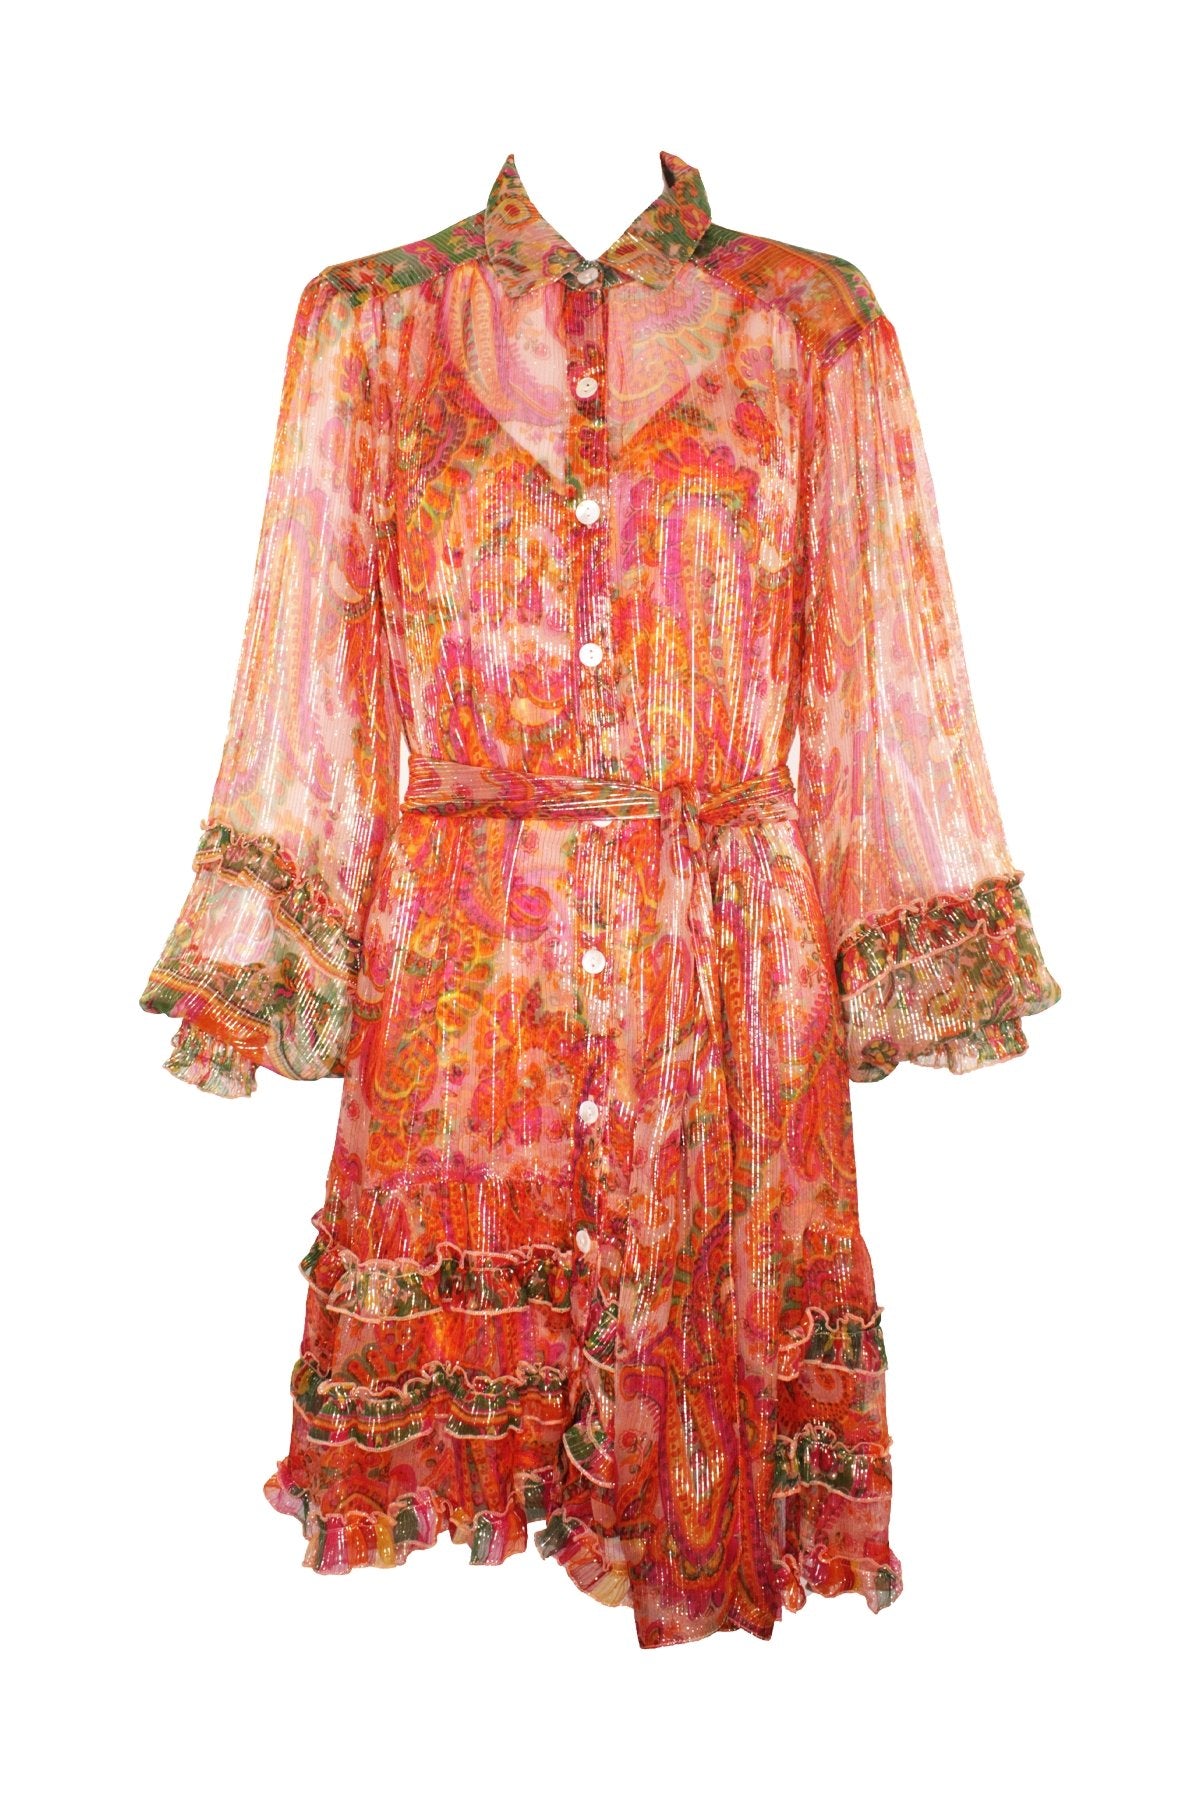 Romi Dress in Peach - shop-olivia.com